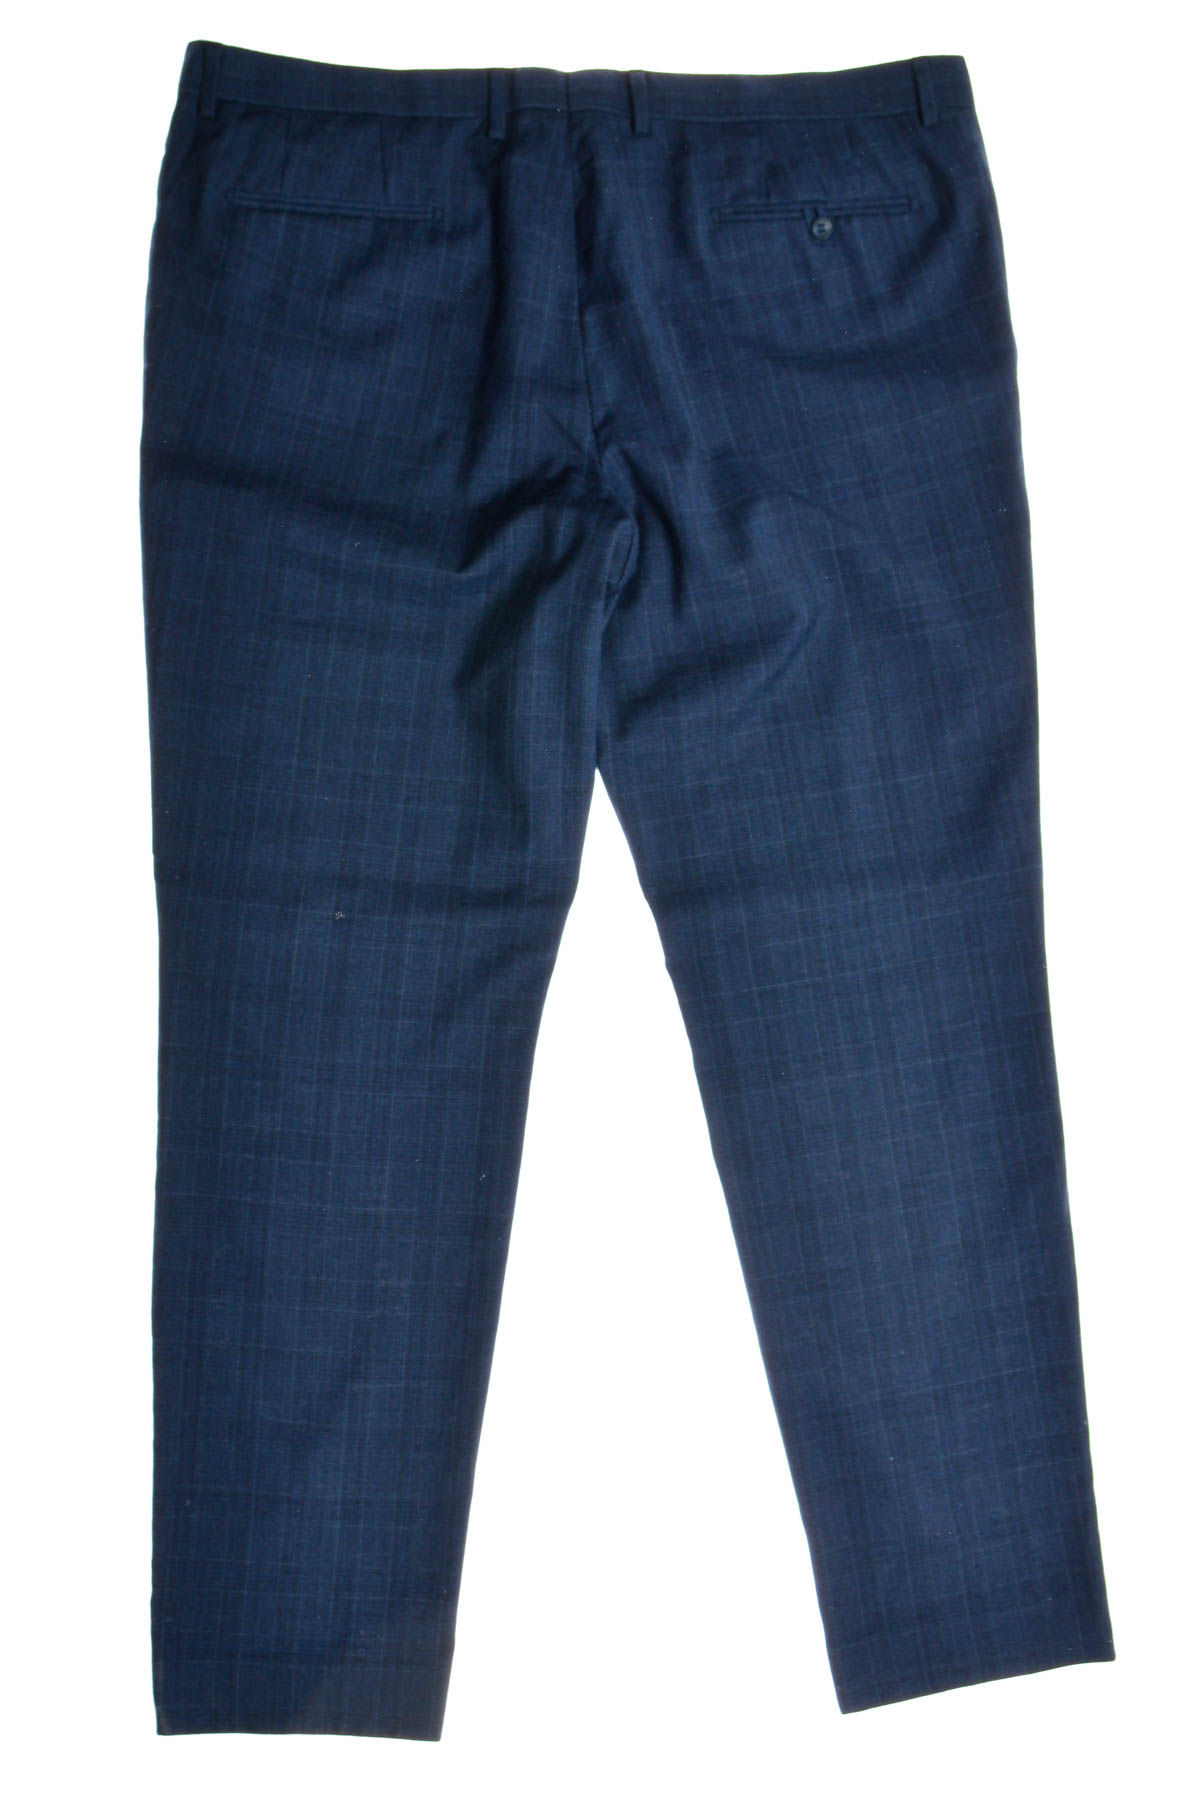 Pantalon pentru bărbați - Bossini - 1